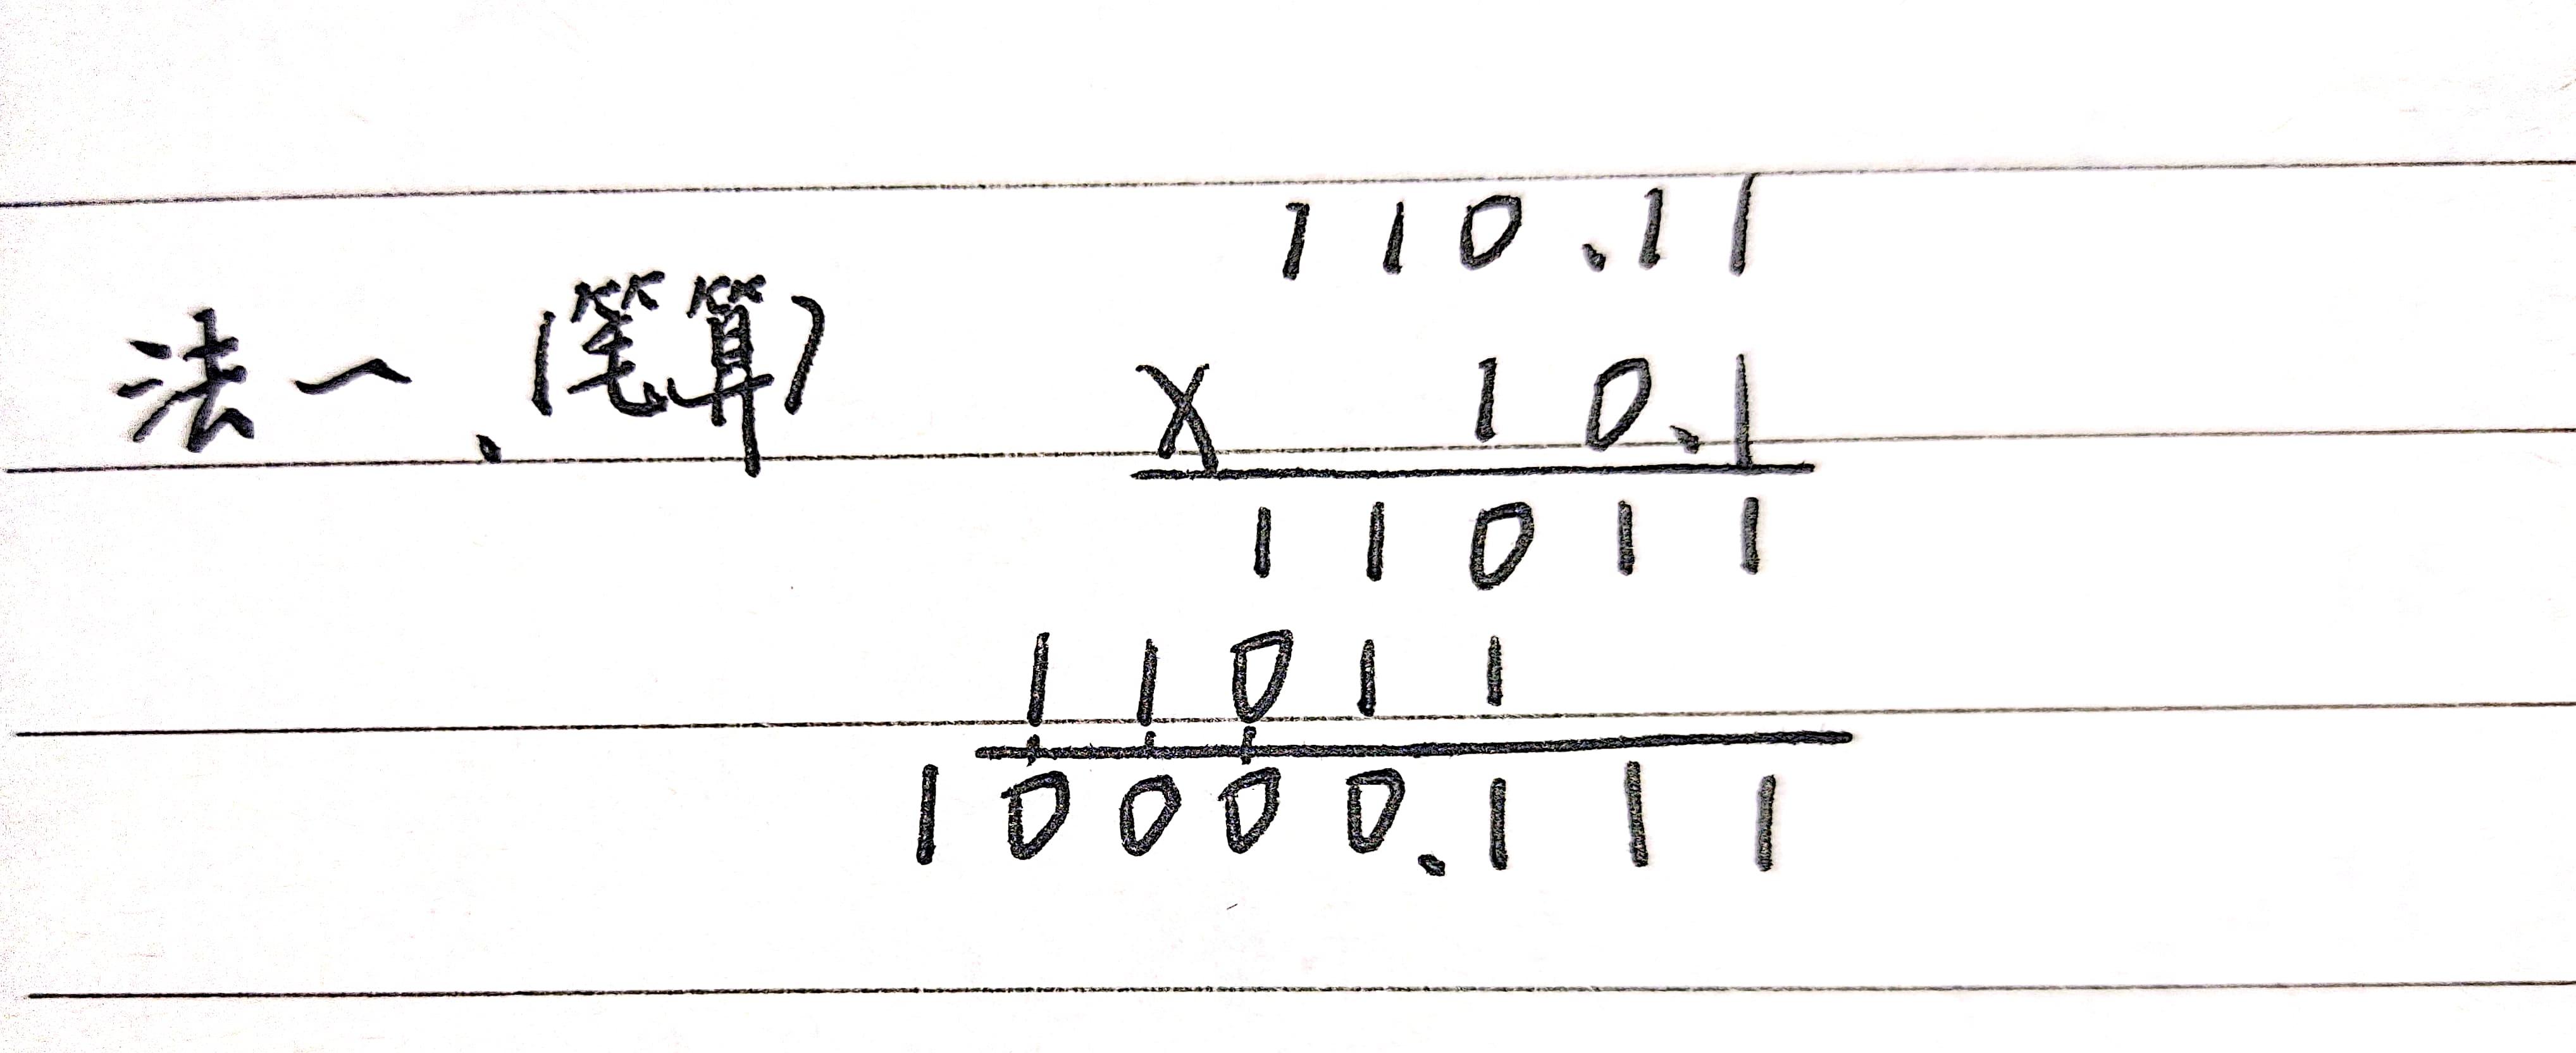 二进制10.1×110.11怎么算?